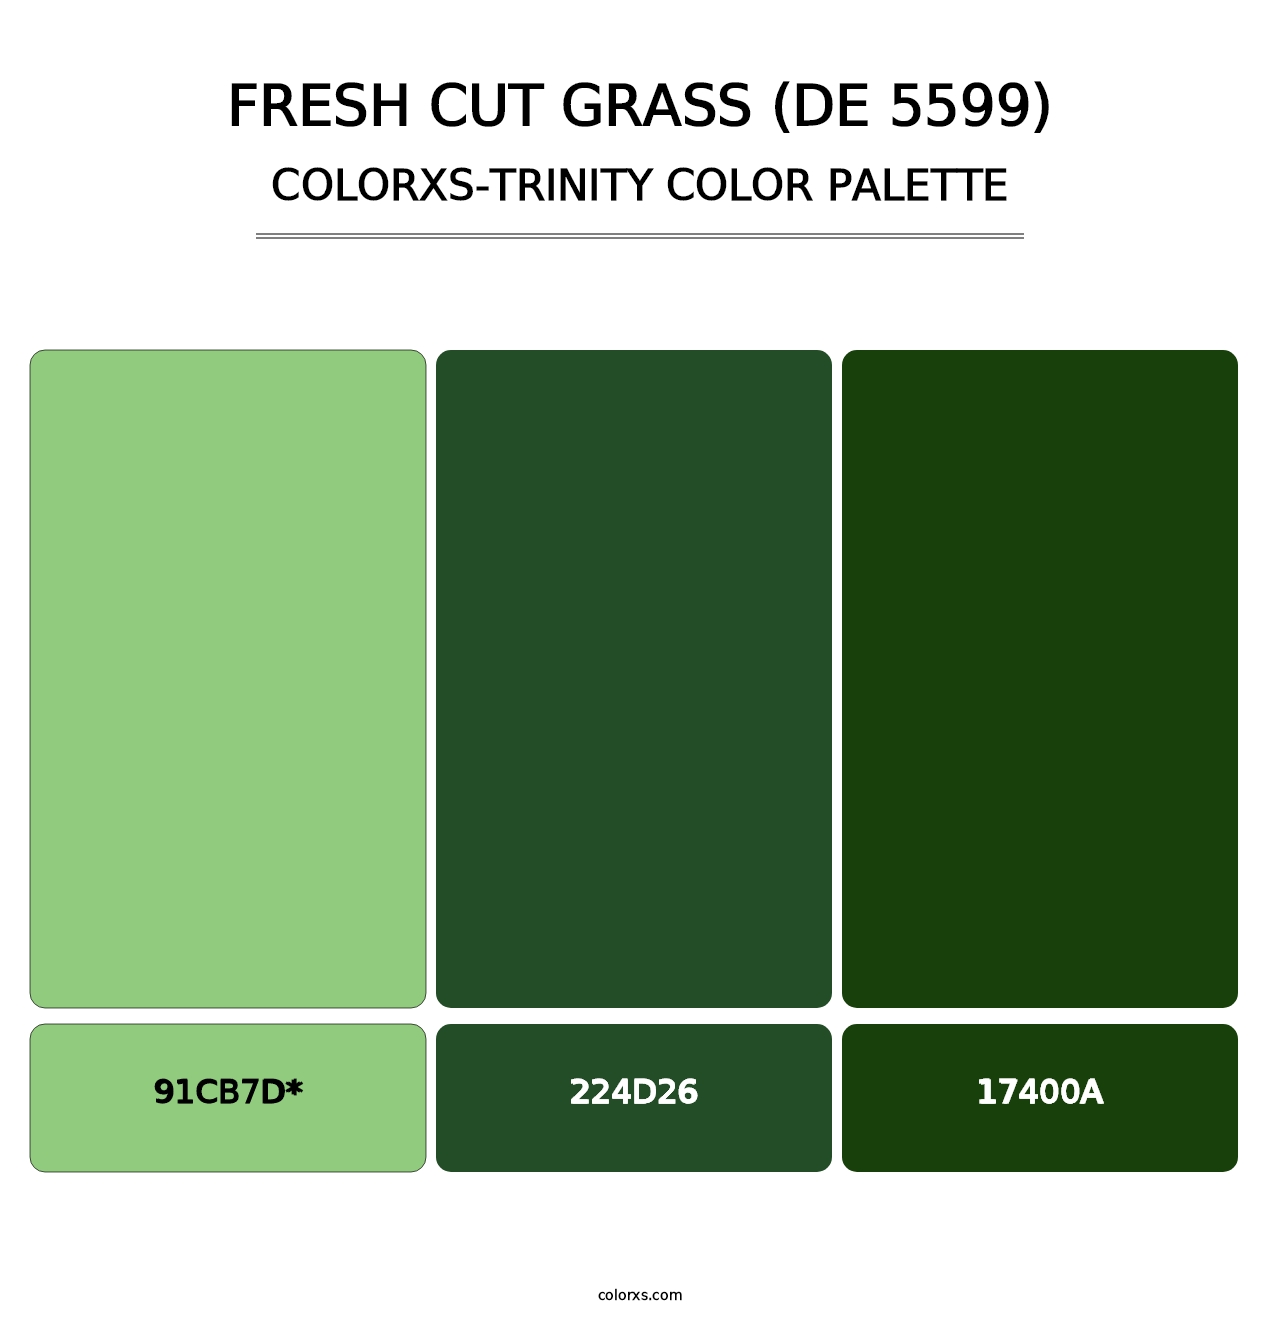 Fresh Cut Grass (DE 5599) - Colorxs Trinity Palette